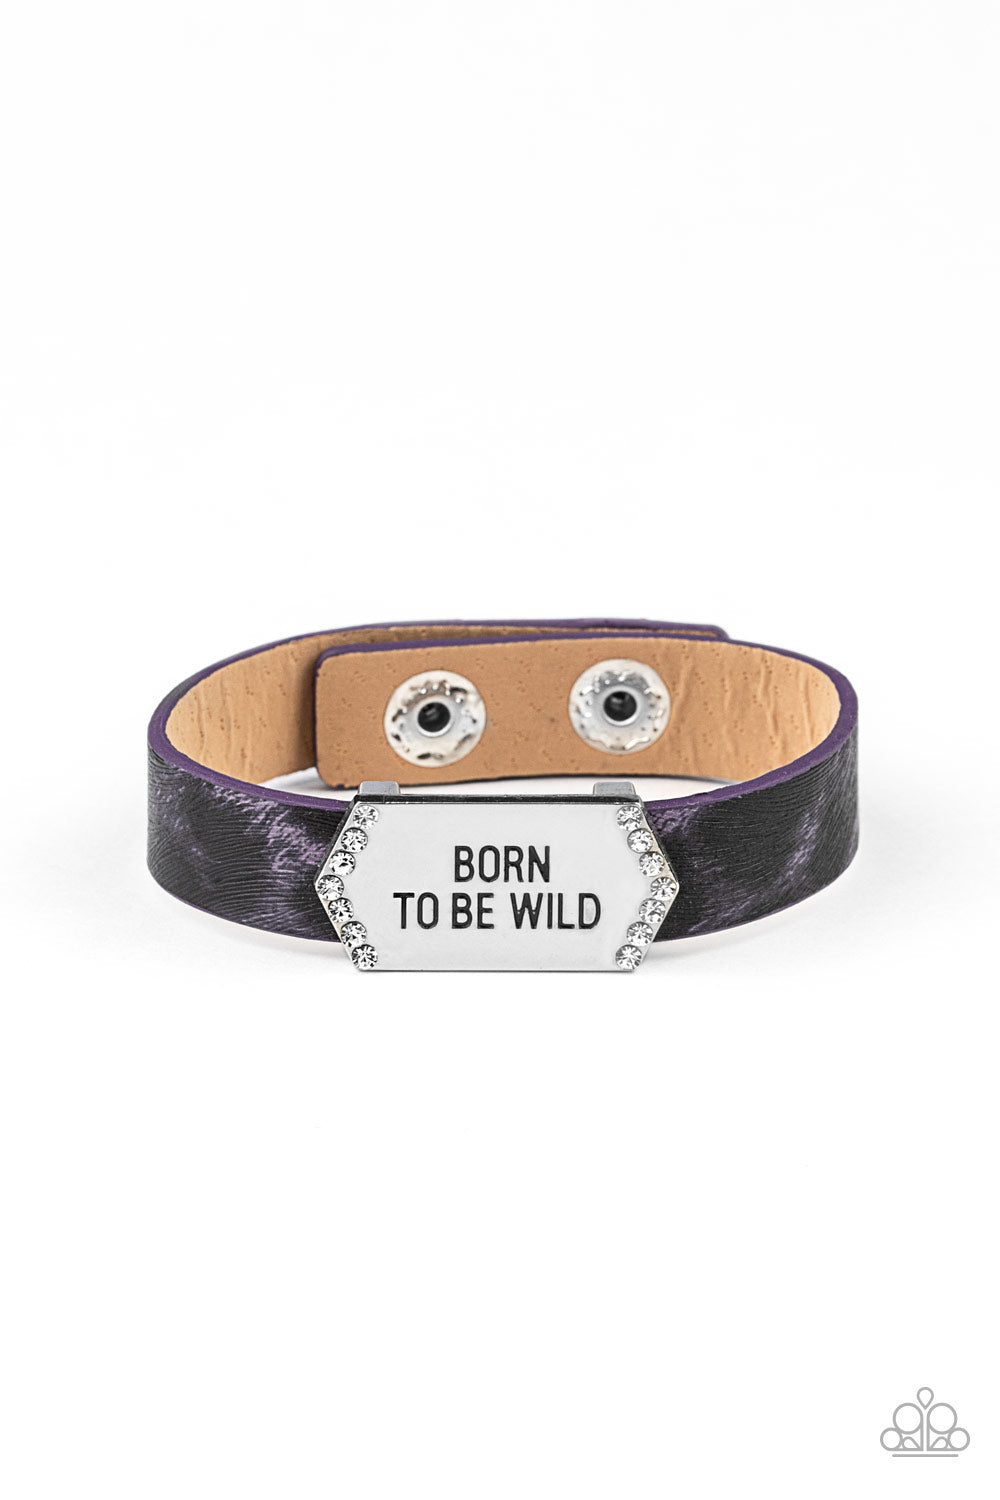 Born To Be Wild Purple
Bracelet - Daria's Blings N Things